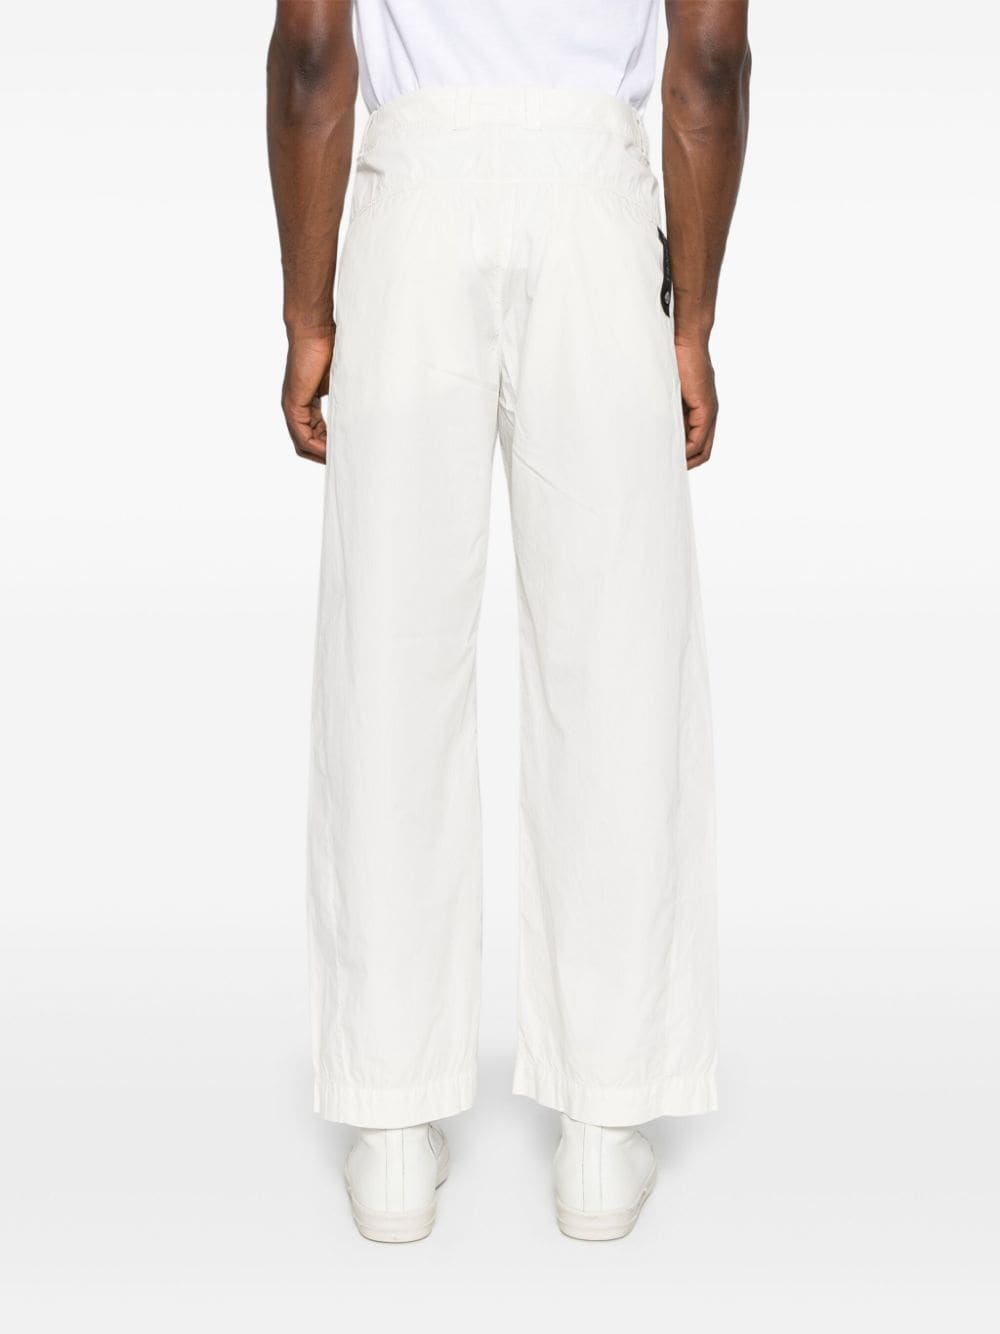 White poplin trousers